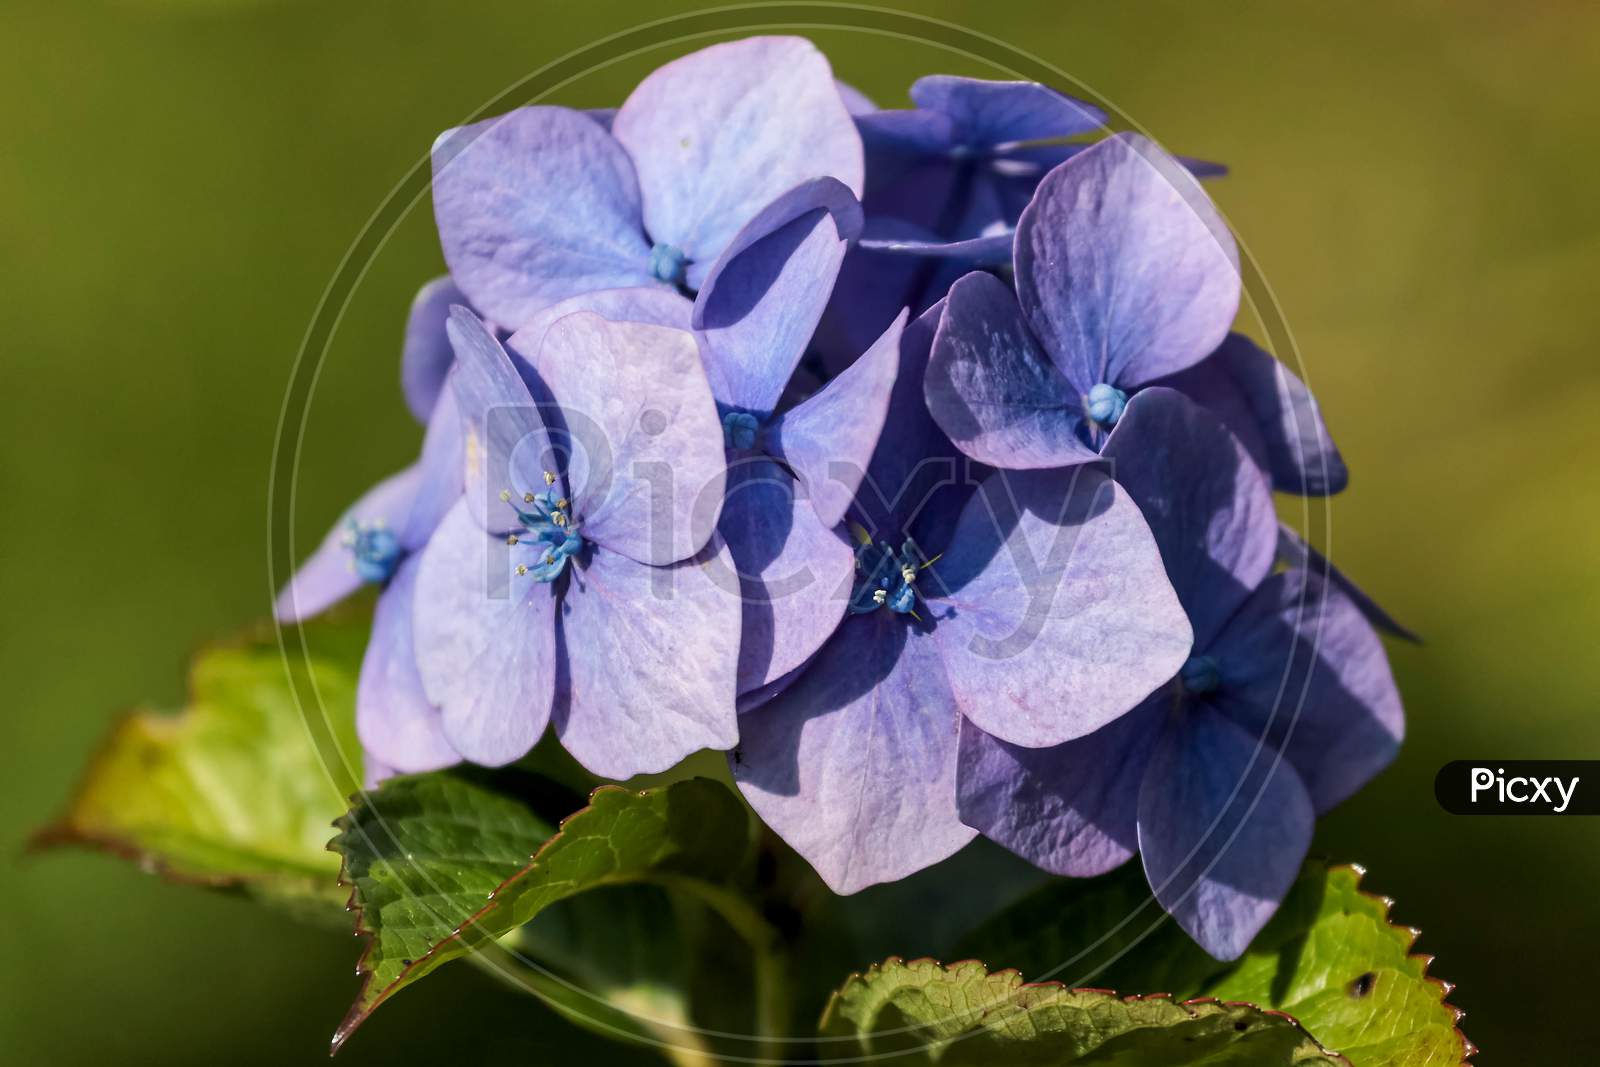 Blue Hydrangea In Full Bloom